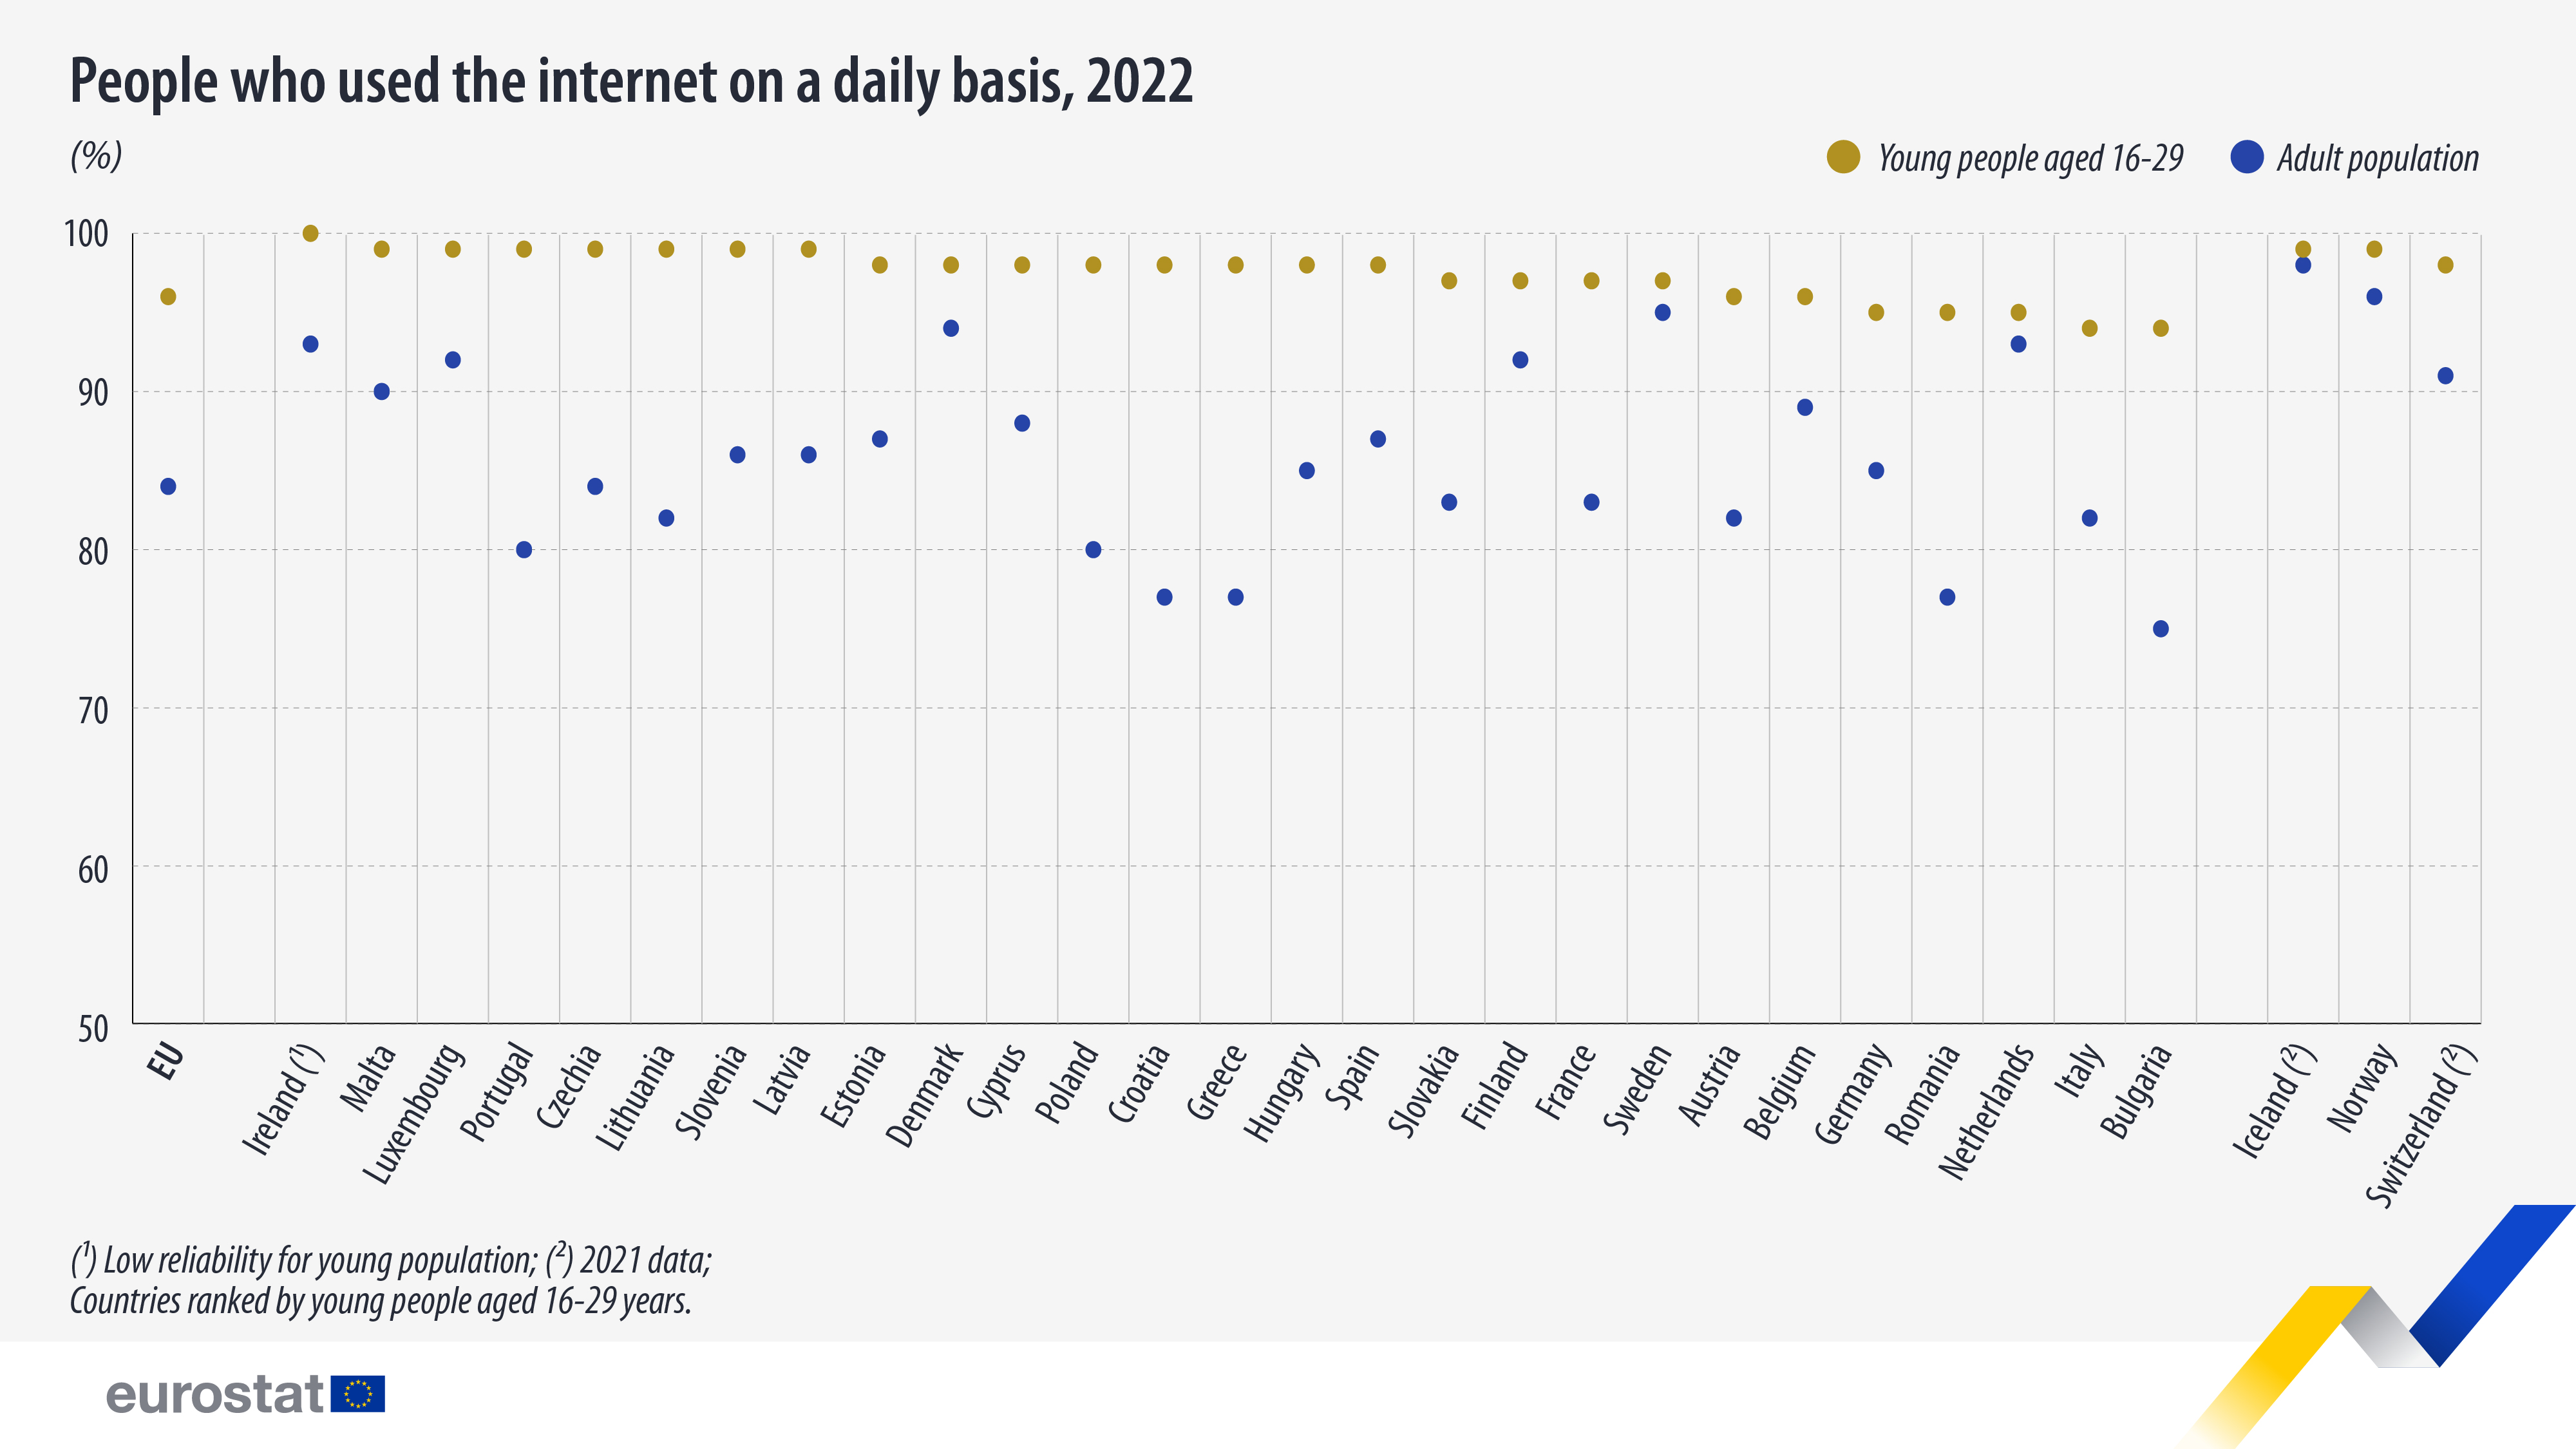 διάγραμμα κουκκίδων: άτομα που χρησιμοποιούσαν το διαδίκτυο σε καθημερινή βάση, 2022 (%, νέοι ηλικίας 16-29 ετών σε χρυσοκίτρινο χρώμα, ενήλικος πληθυσμός με μπλε)